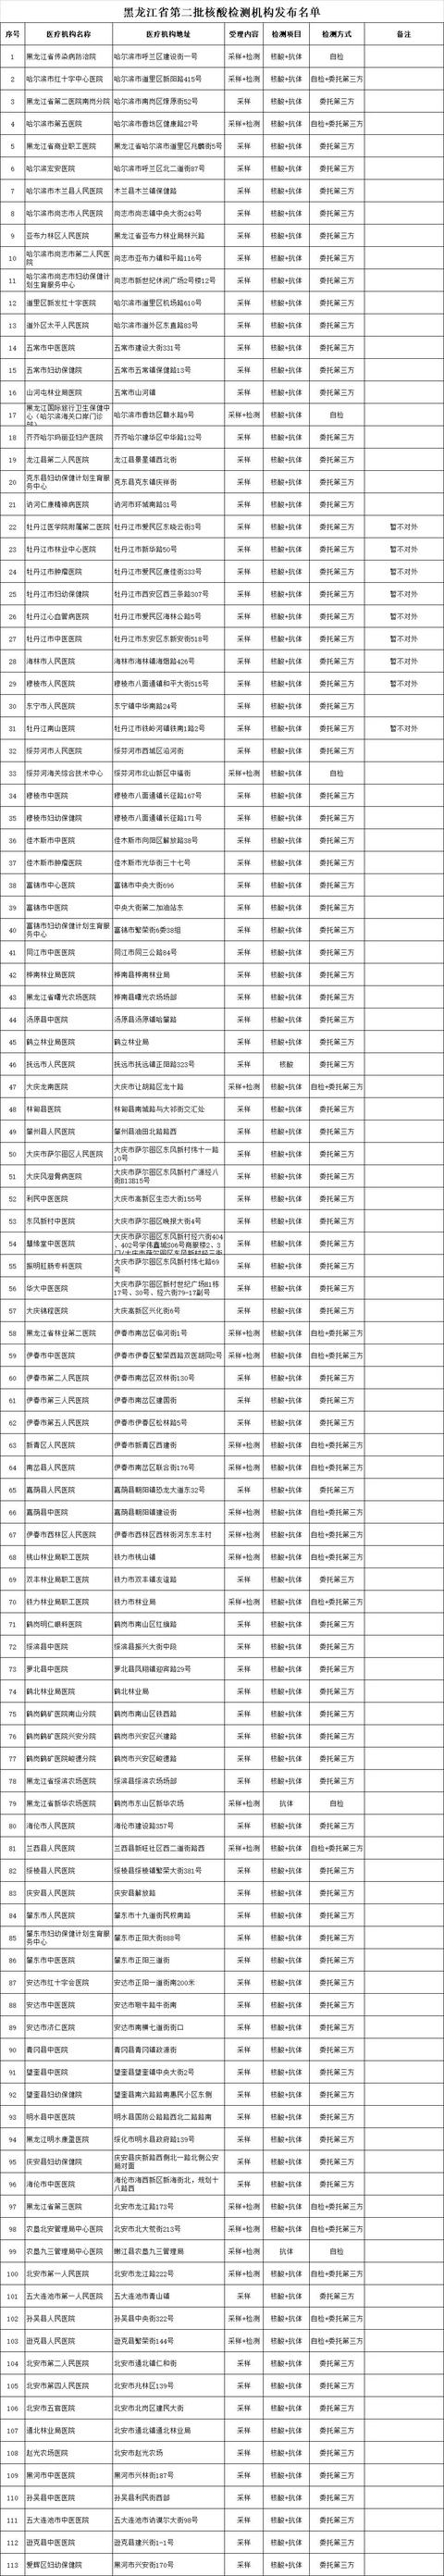 黑龙江省公布第二批113家核酸采样及检测机构名单